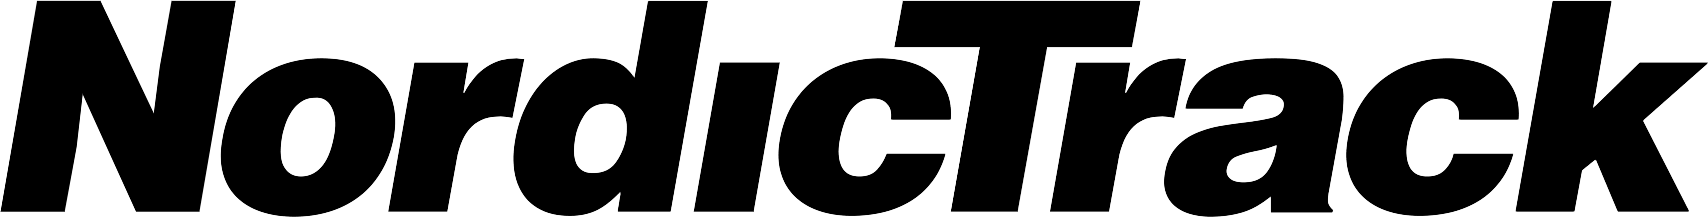 nordictrack-logo